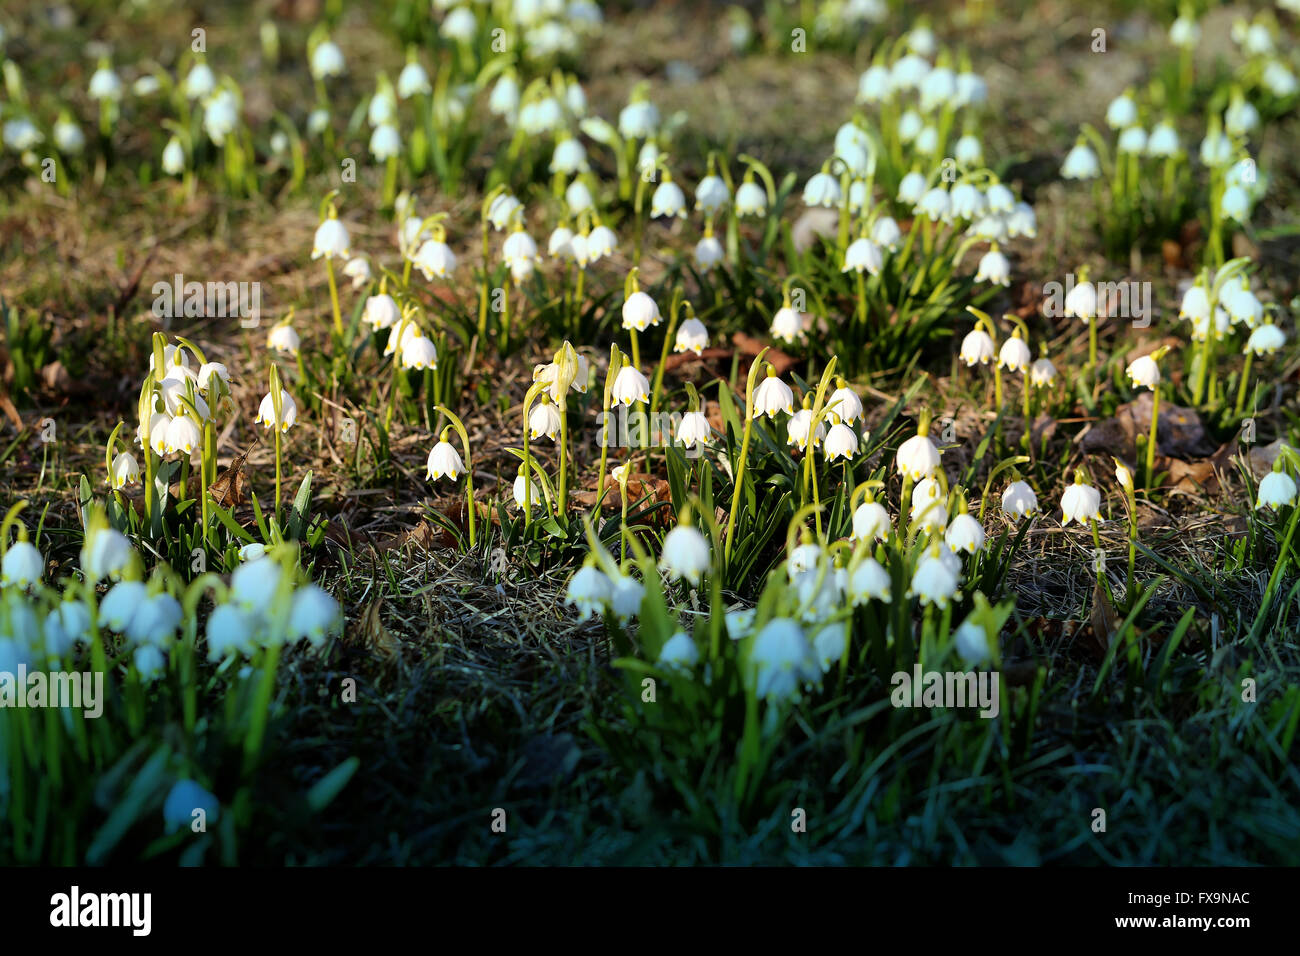 Schönen Frühling Primeln Schneeglöckchen fotografiert schließen sich Stockfoto